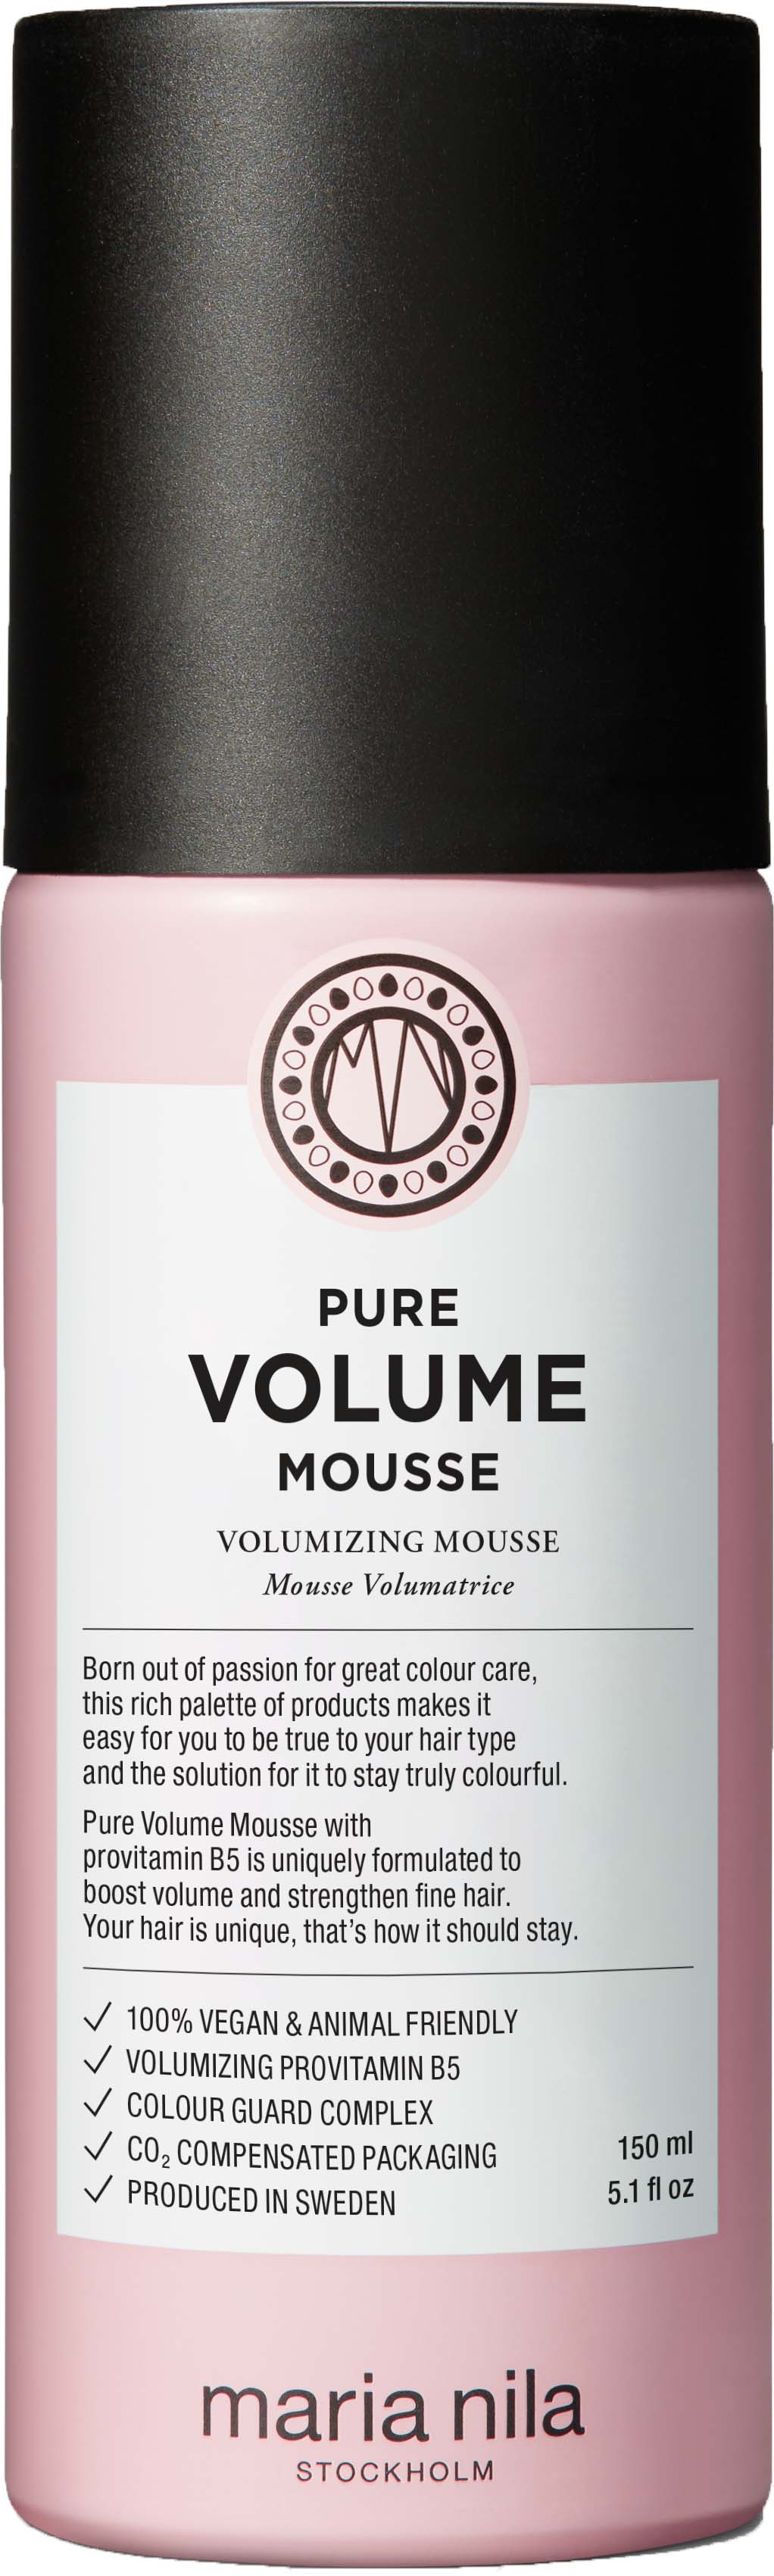 Maria Nila Care & Style Pure Volume Mousse 150ml